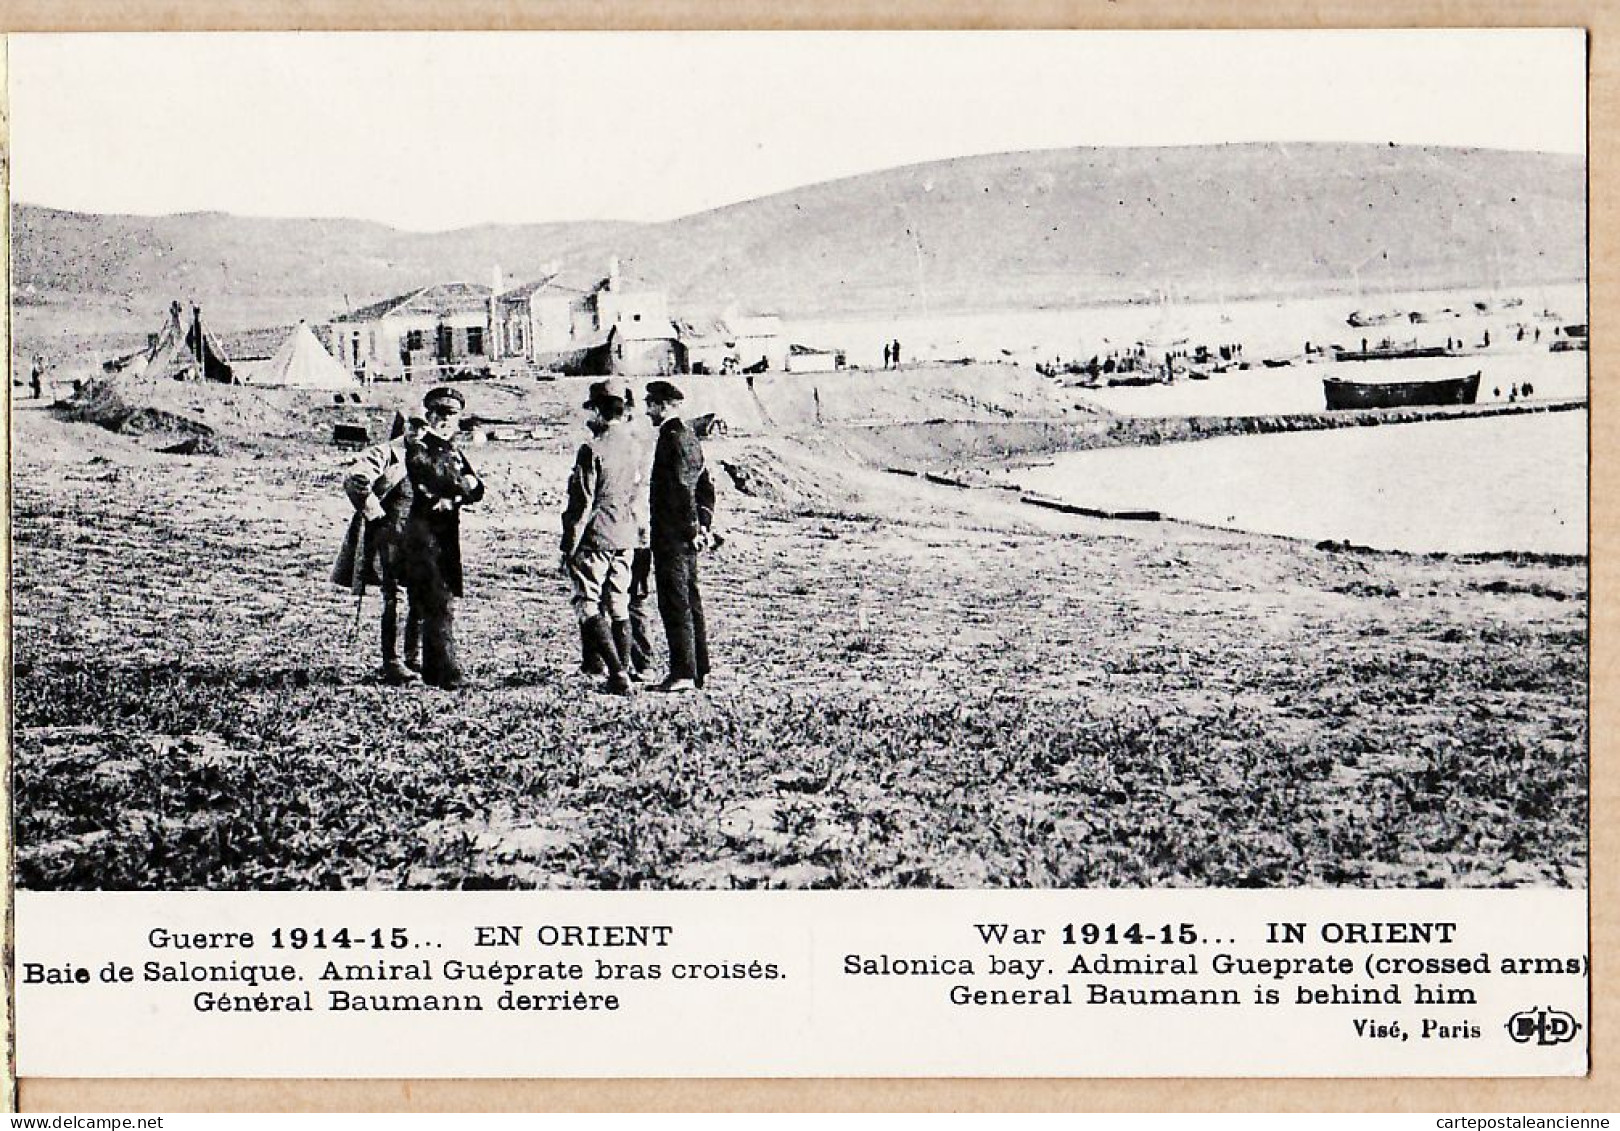 06374 / Baie De SALONIQUE SALONICA Visite Rencontre Amiral GUEPRATE Général BAUMANN CpaWW1 Guerre 1914-15 LE DELEY - Greece